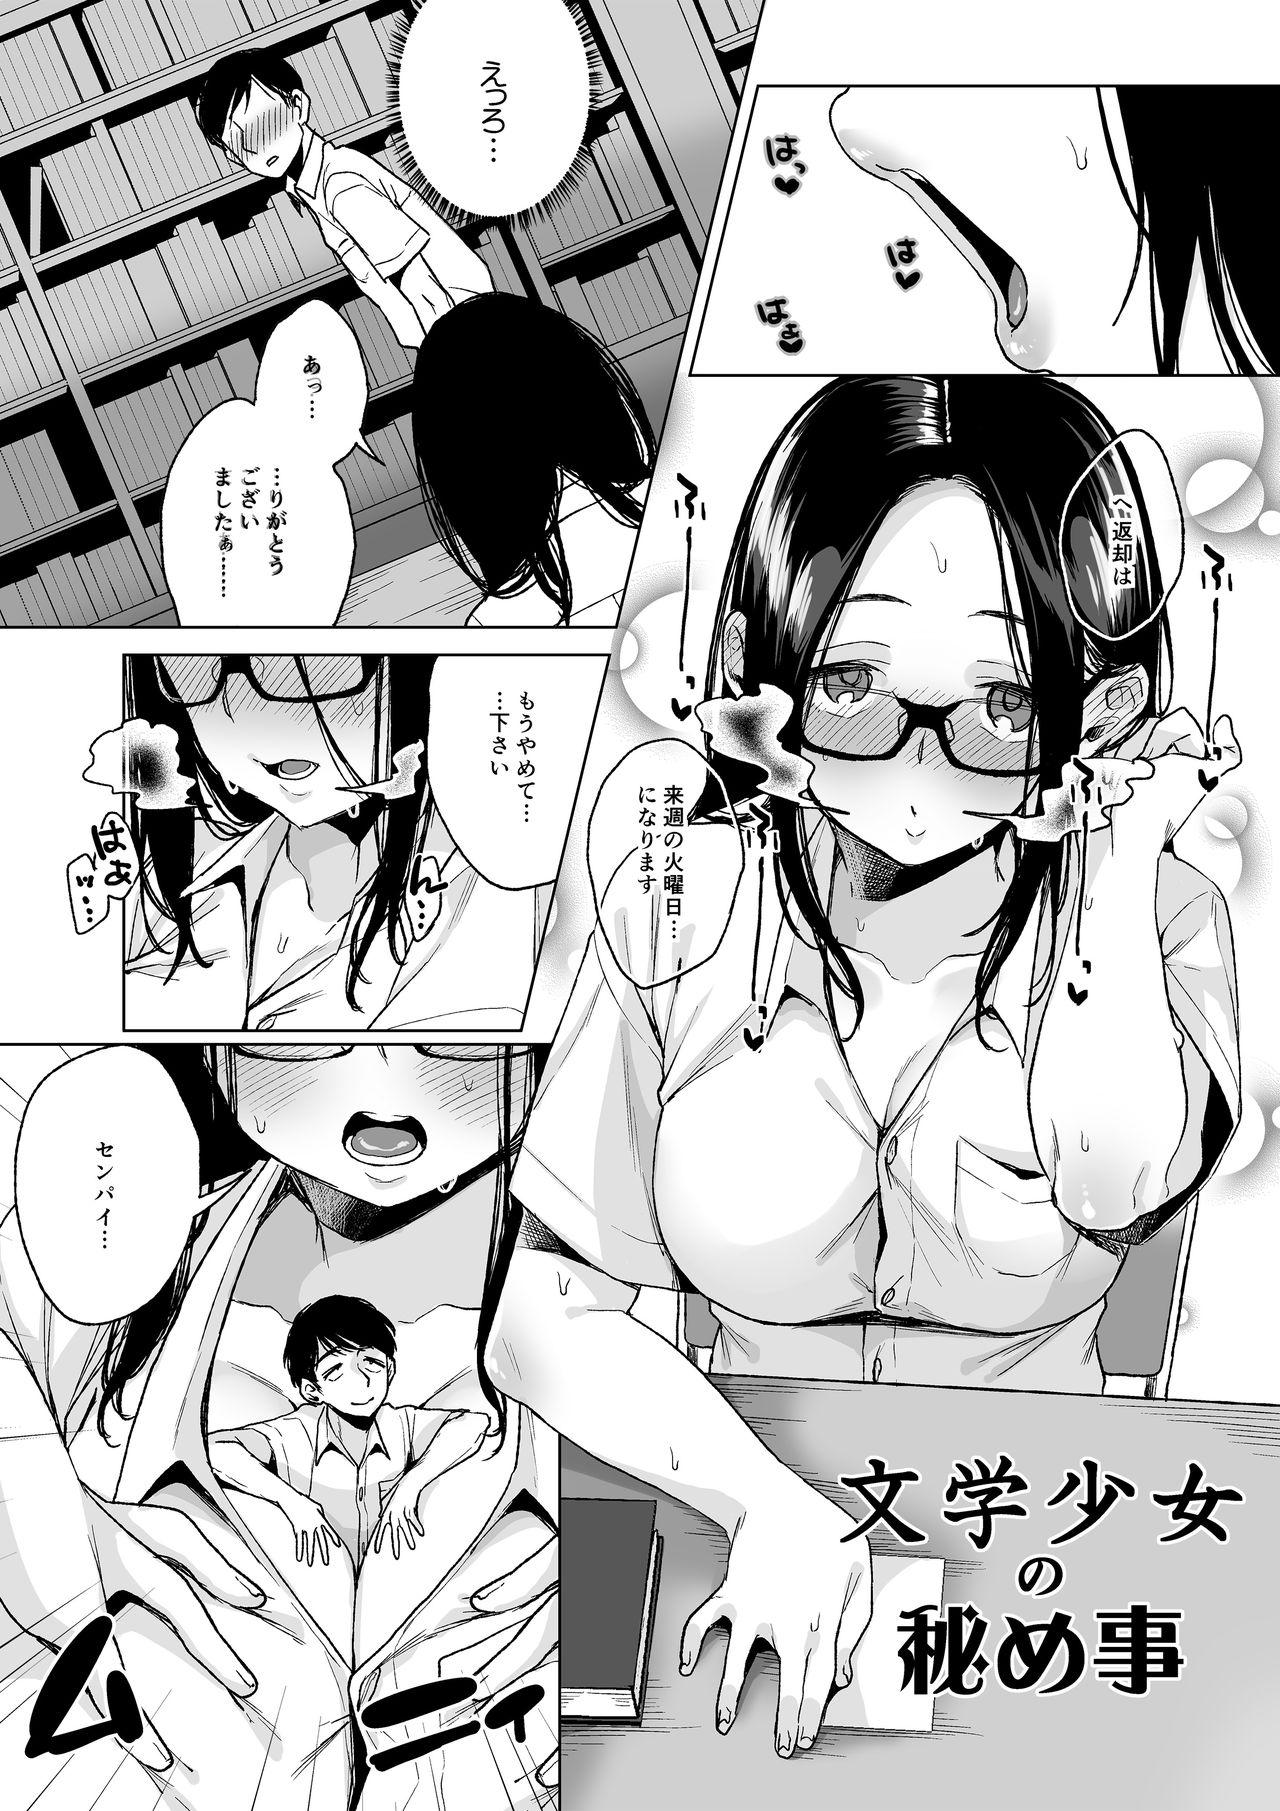 Metendo MM Vol. 50 Shumatsu wa Oppai ni Yosete♥ Futa - Page 6